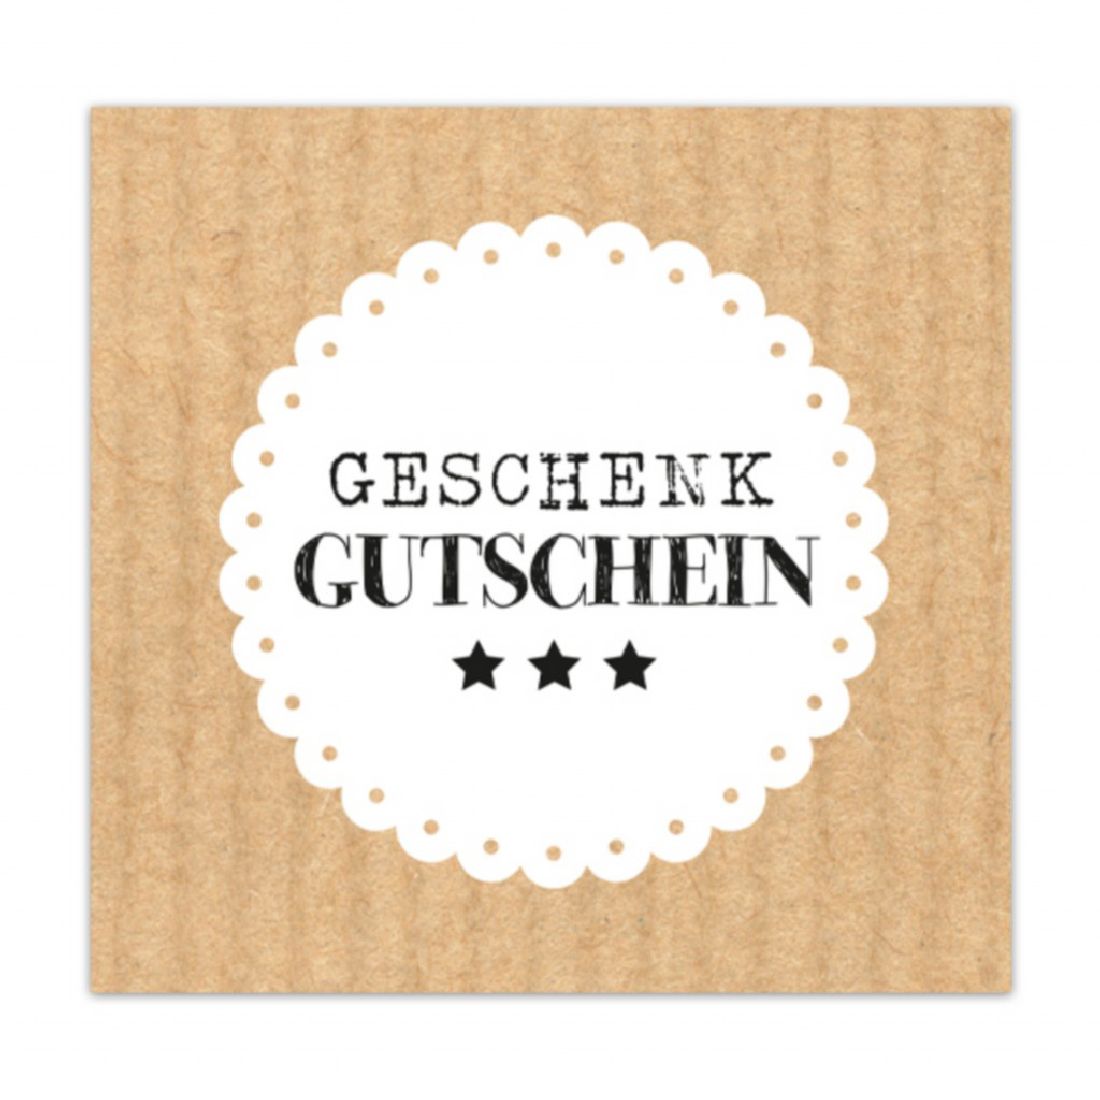 Gutschein GESCHENK GUTSCHEIN Present 12x12cm  inkl.Umschlag